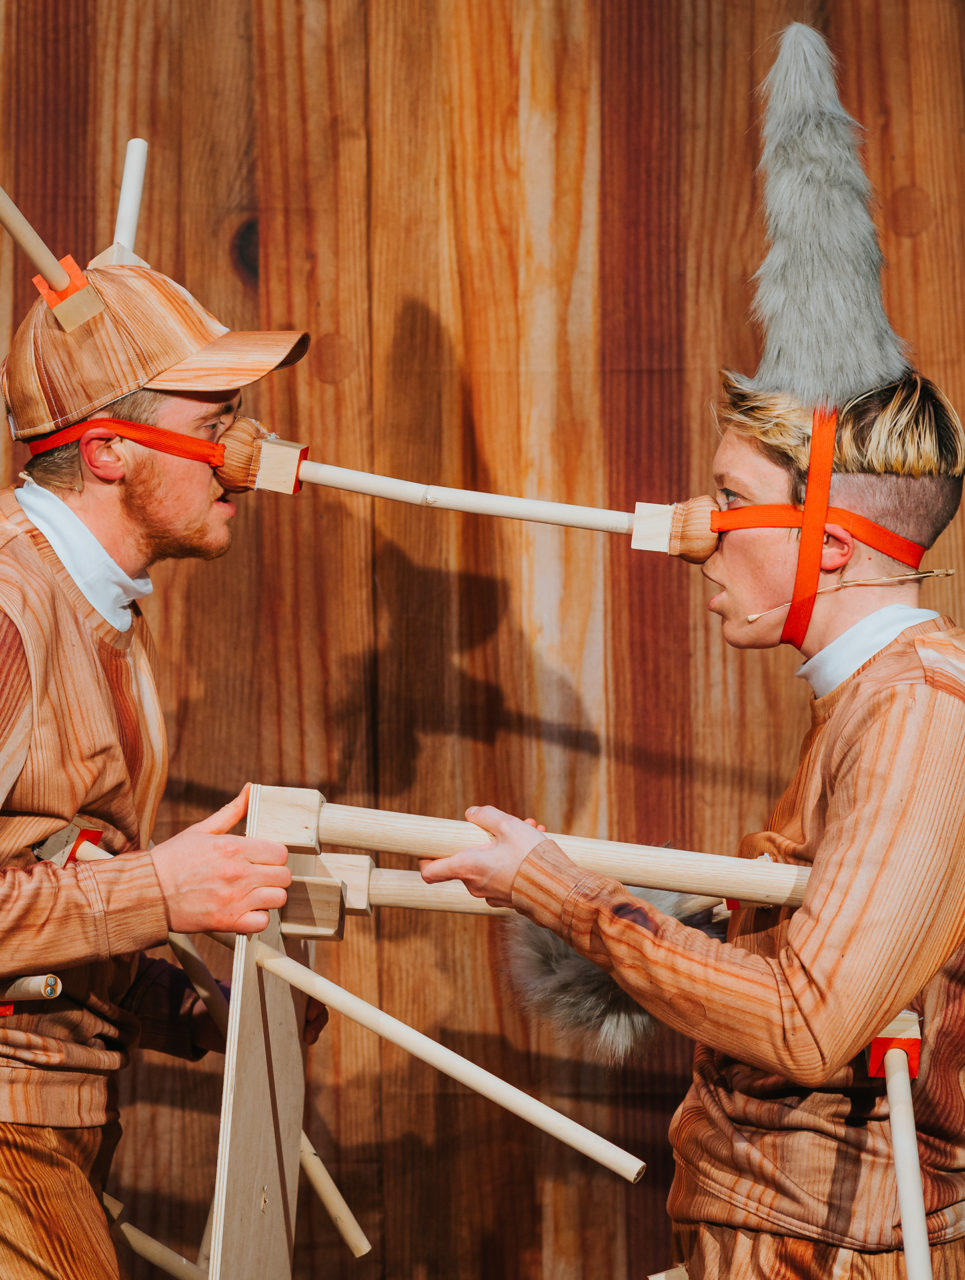 Photo de Rosana Cade et Ivor MacAskill performant sur scène dans des costumes s'apparentant au personnage de Pinocchio